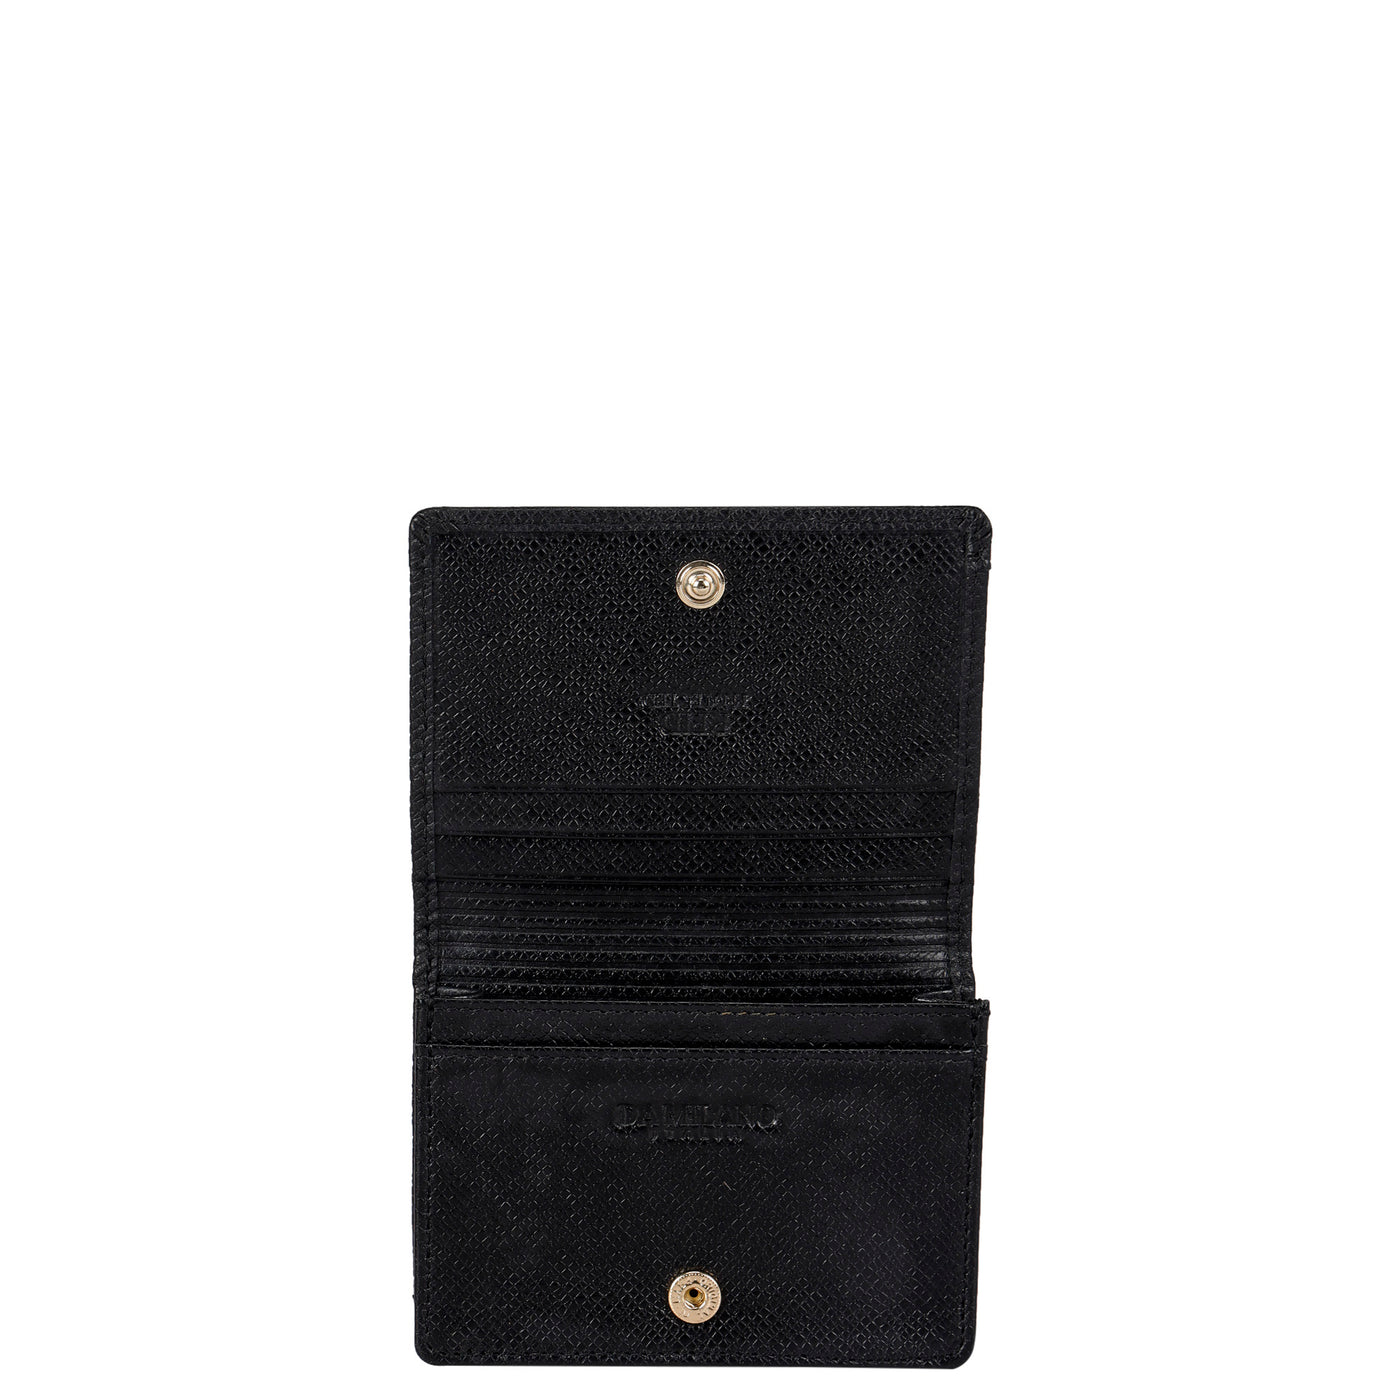 Franzy Croco Leather Card Case - Black